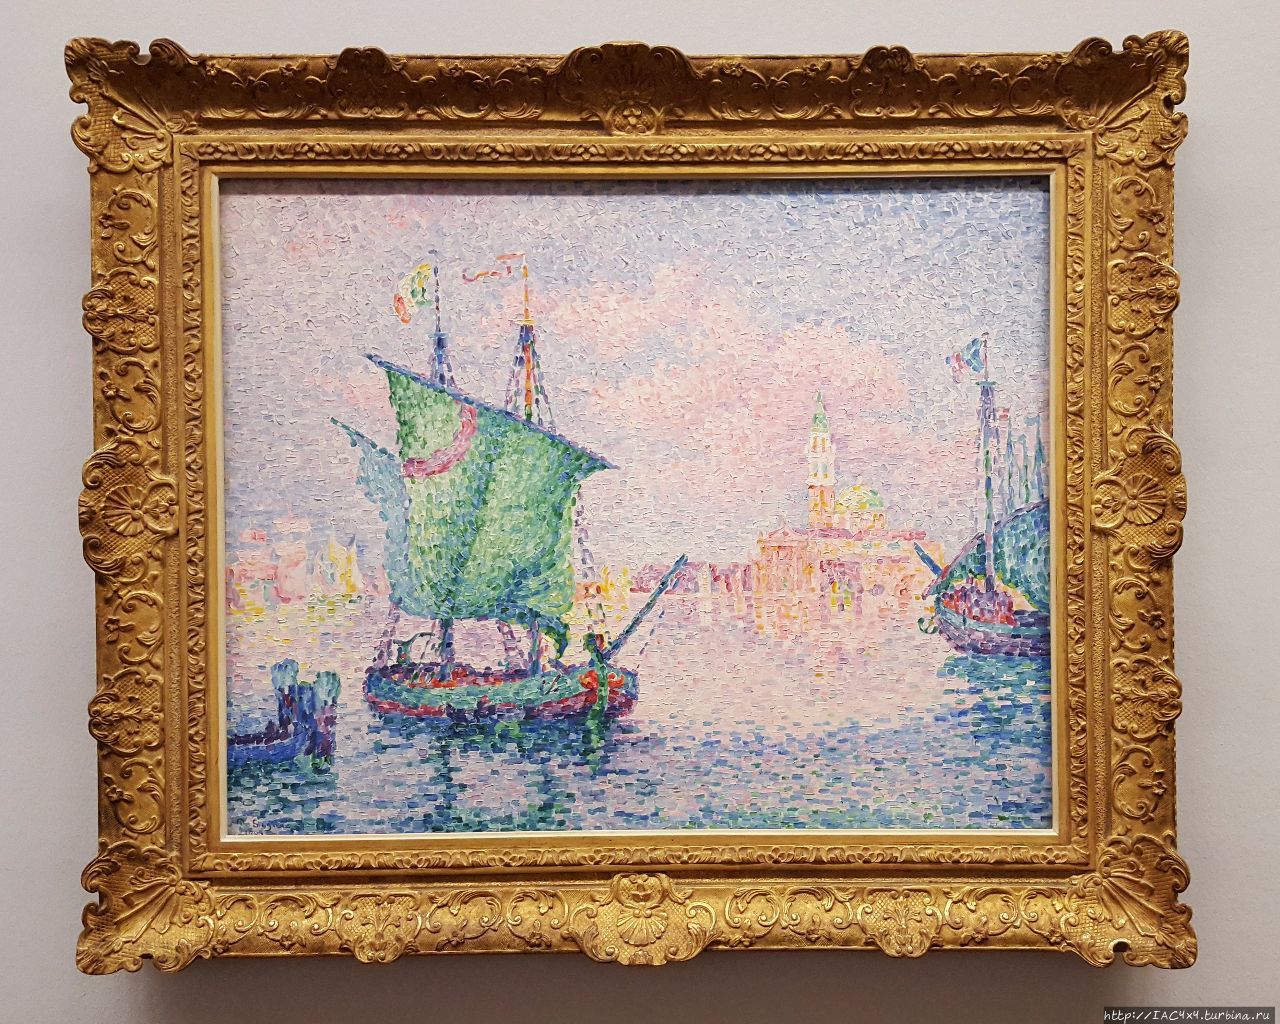 Поль Синьяк, Венеция. Розовые облака (1909) Вена, Австрия